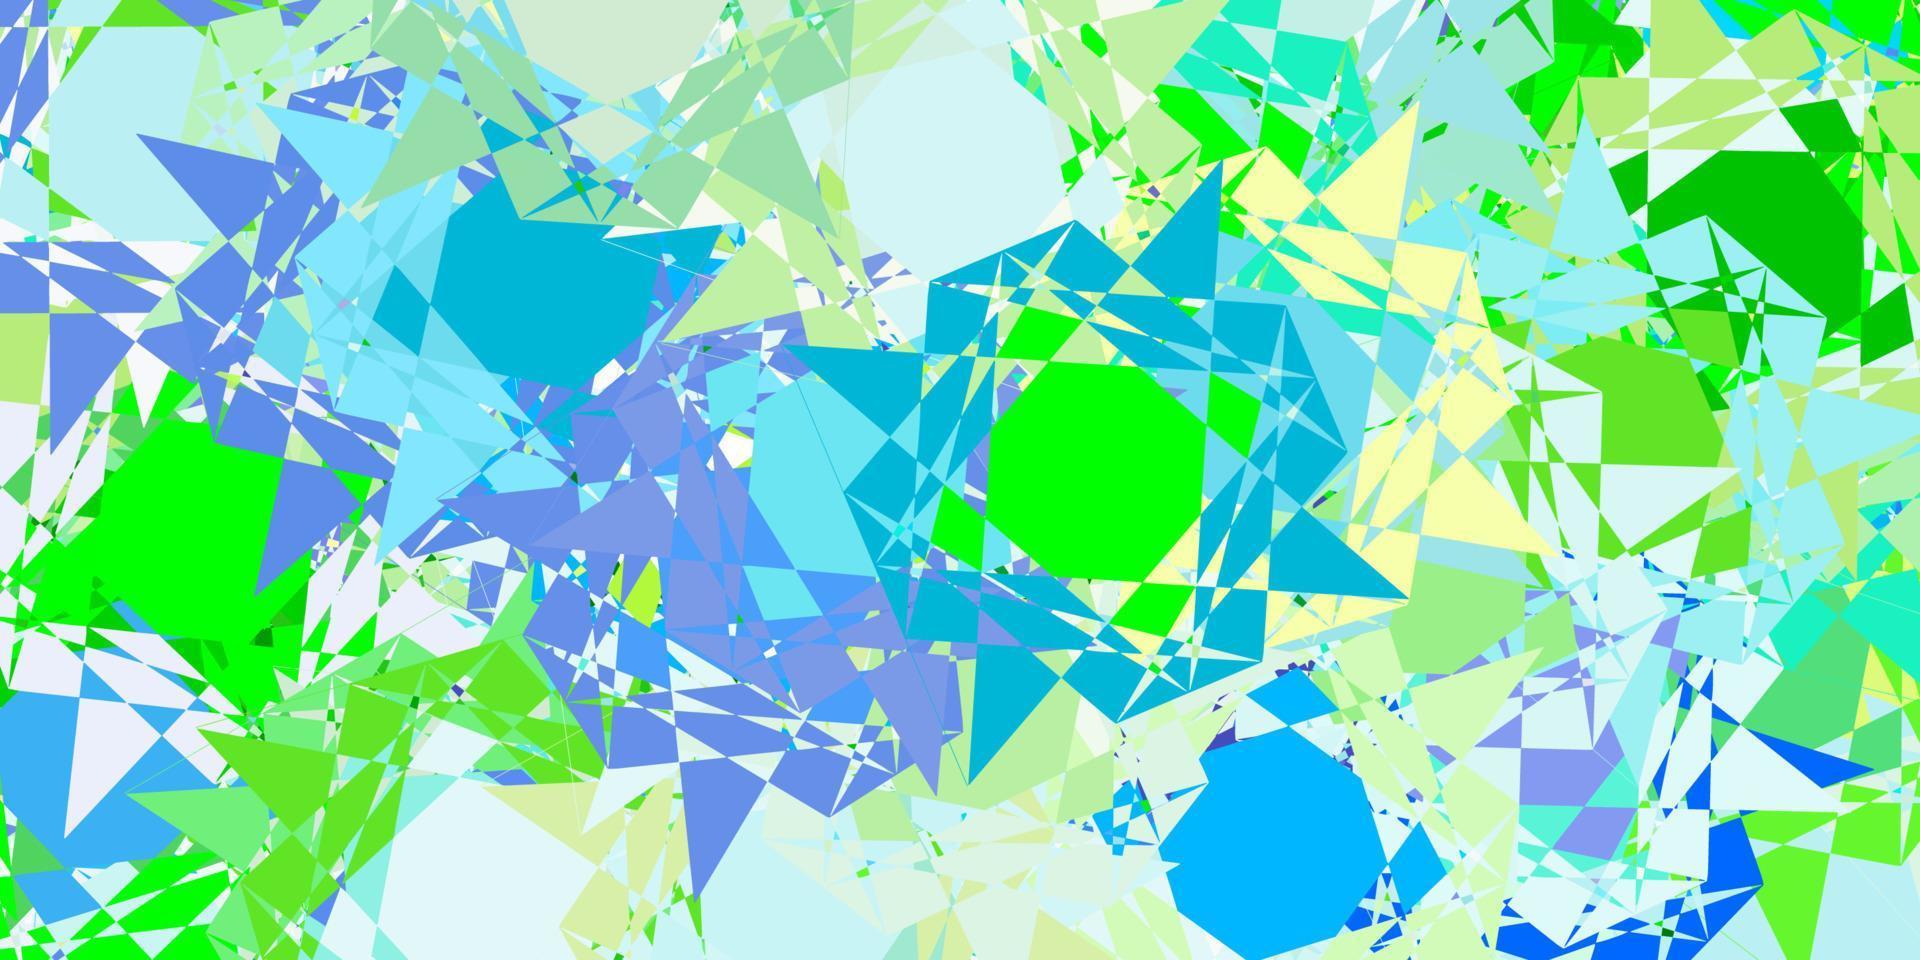 layout de vetor azul claro e verde com formas triangulares.